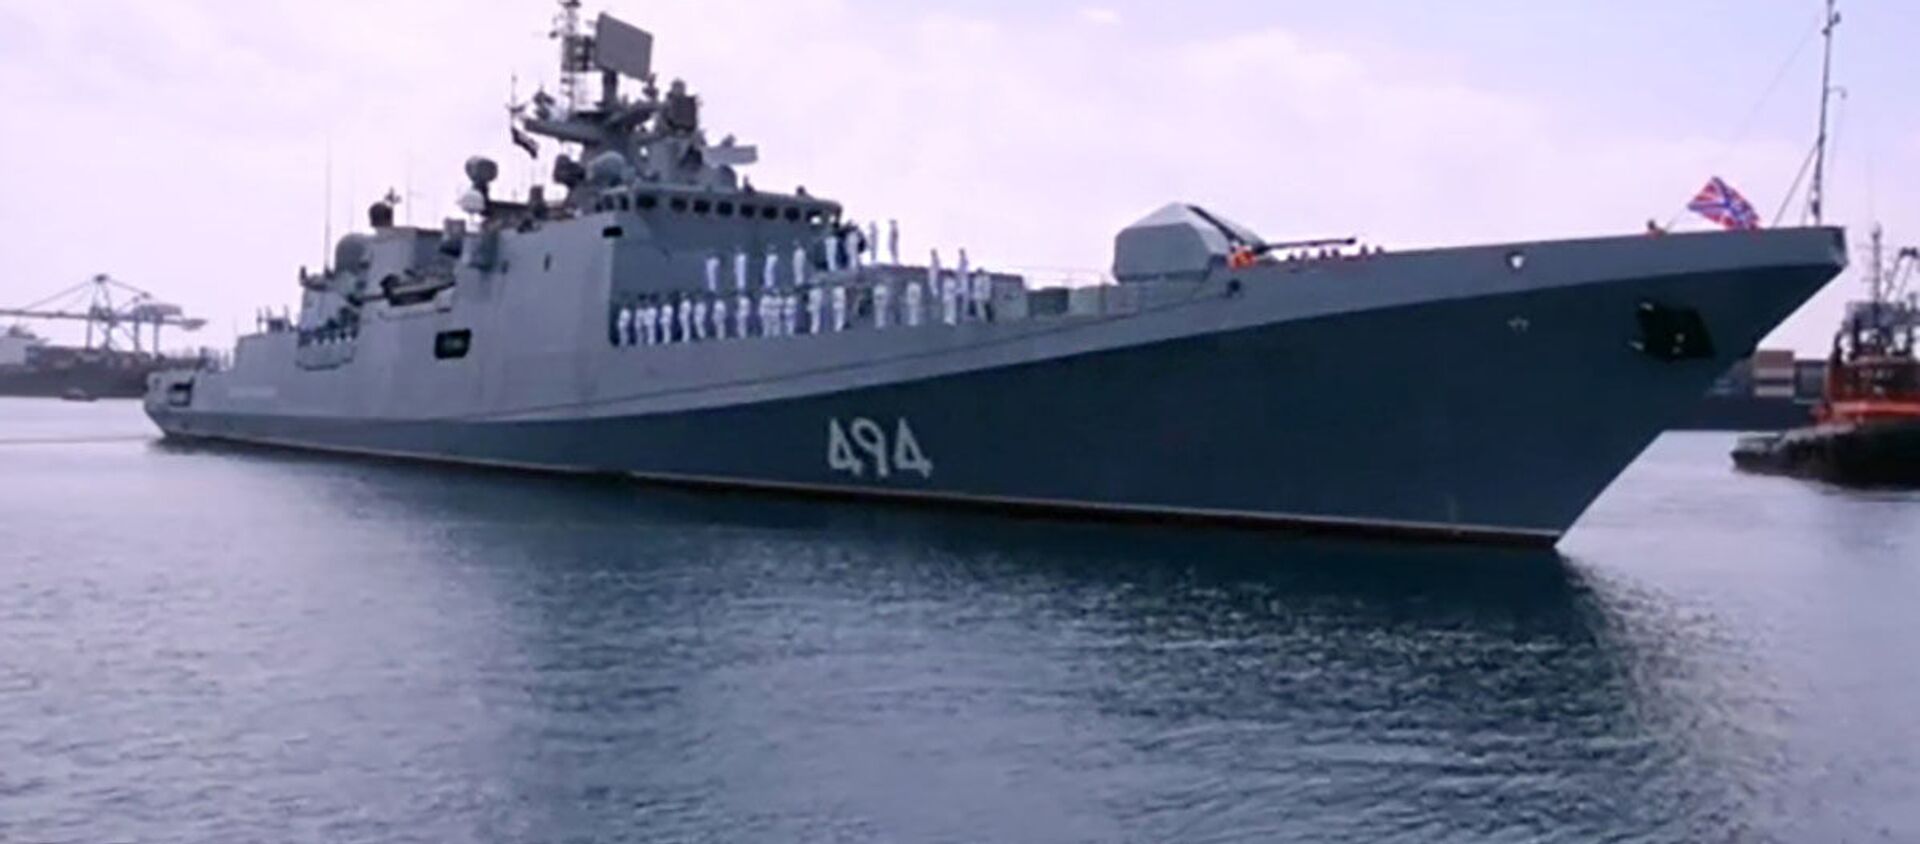 سودان در توافق با روسیه در مورد واگذاری پایگاه دریایی تجدید نظر می کند - اسپوتنیک ایران  , 1920, 02.06.2021